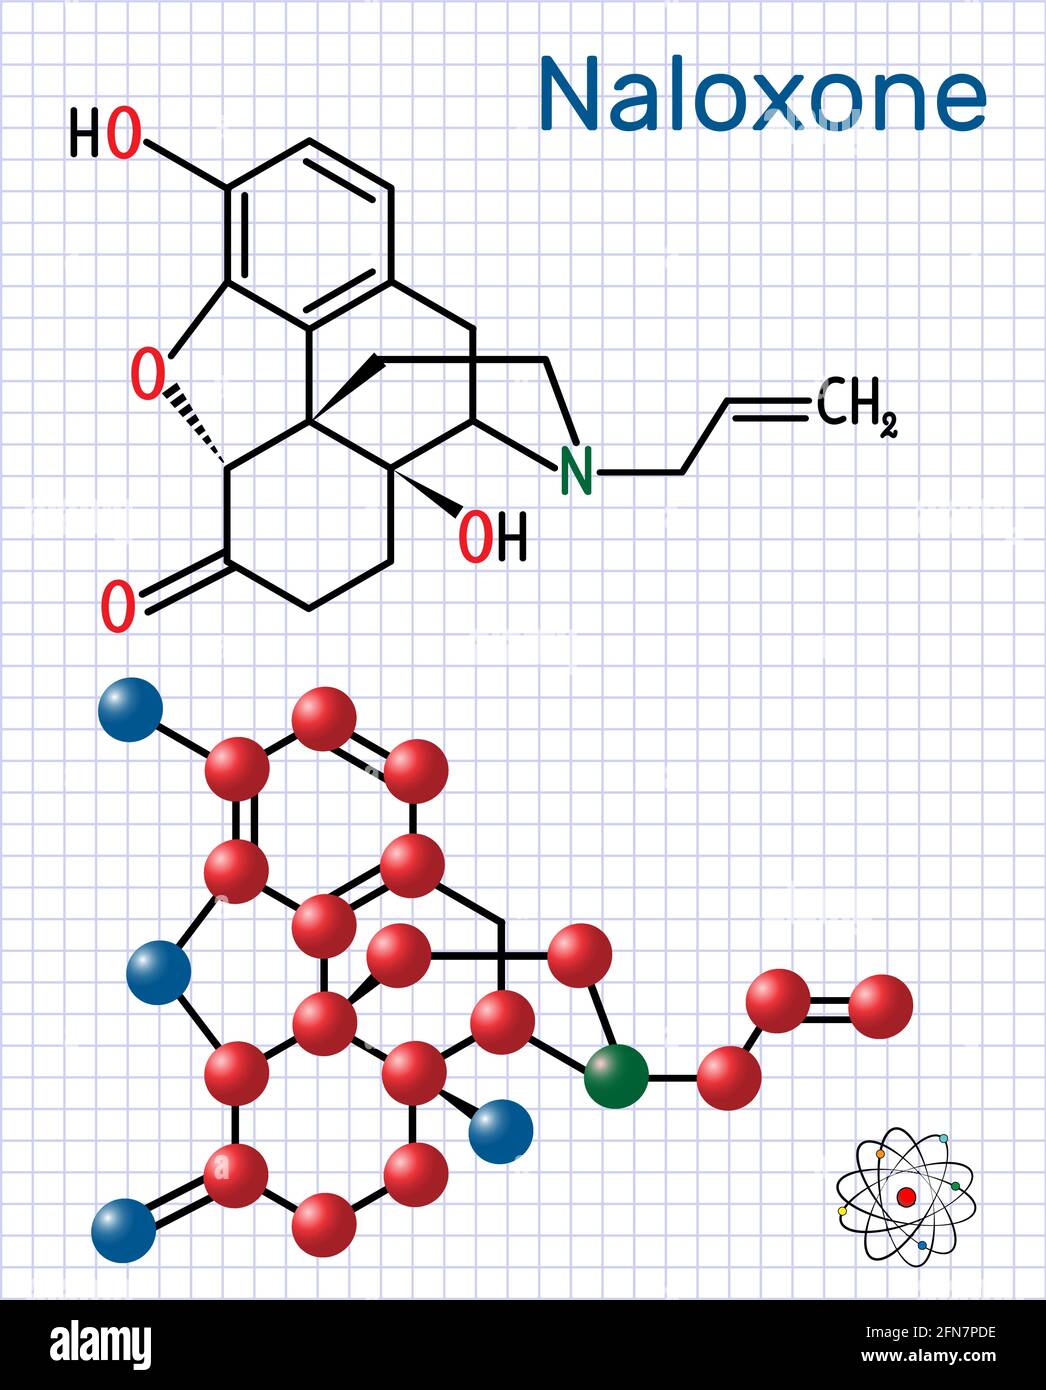 Naloxon-Molekül. Es wird verwendet, um die Auswirkungen von Opioiden zu blockieren, insbesondere bei Überdosierung. Strukturelle chemische Formel und Molekülmodell. Blatt Papier Stock Vektor